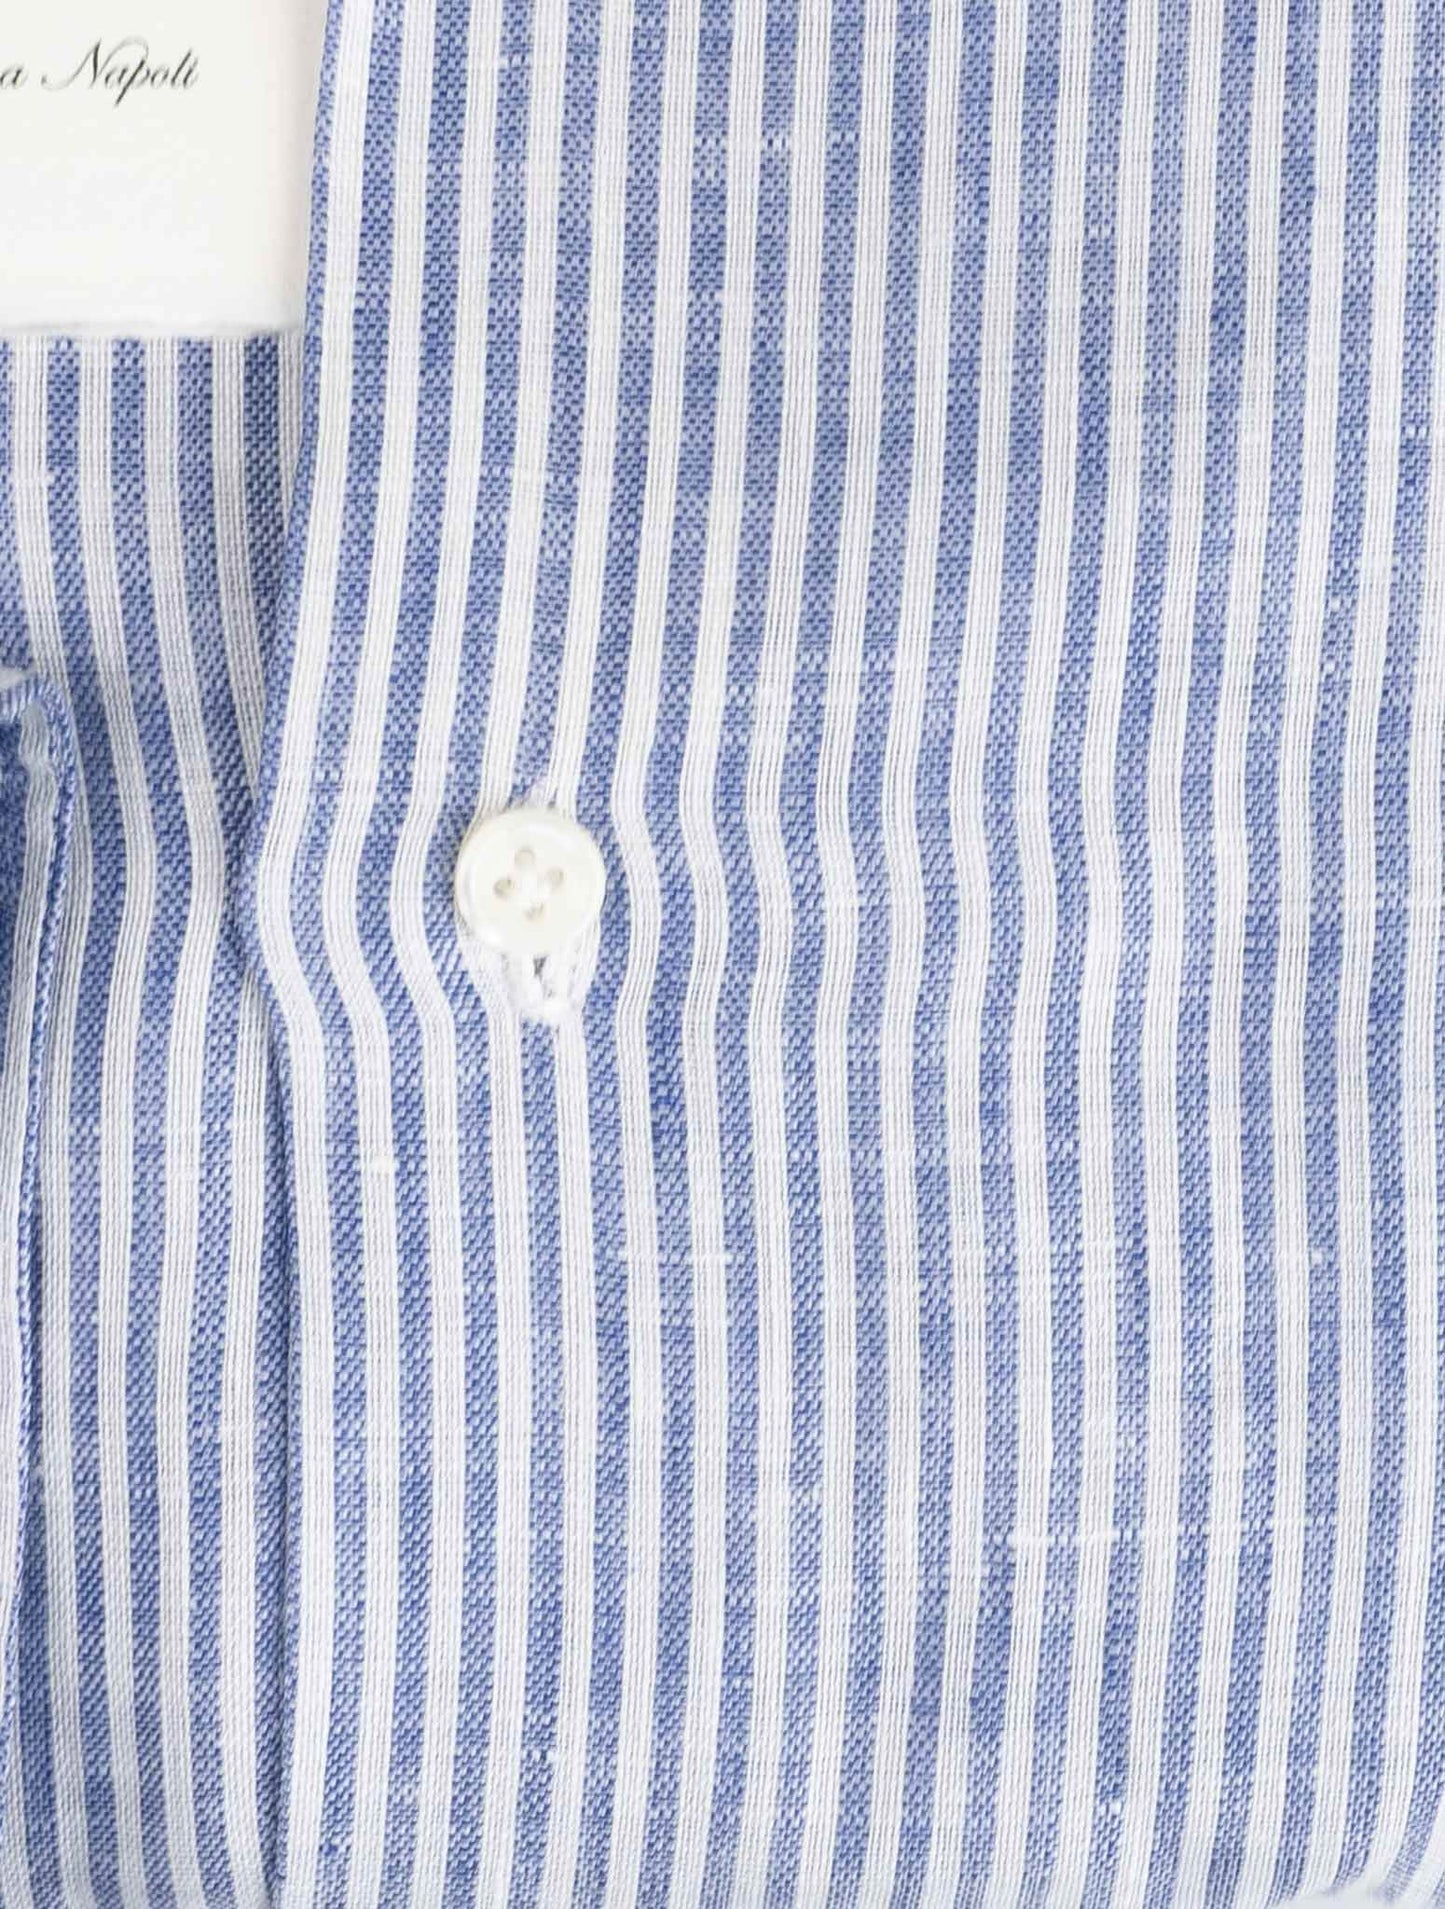 لويجي بورلي قميص من القطن الأبيض والأزرق الفاتح